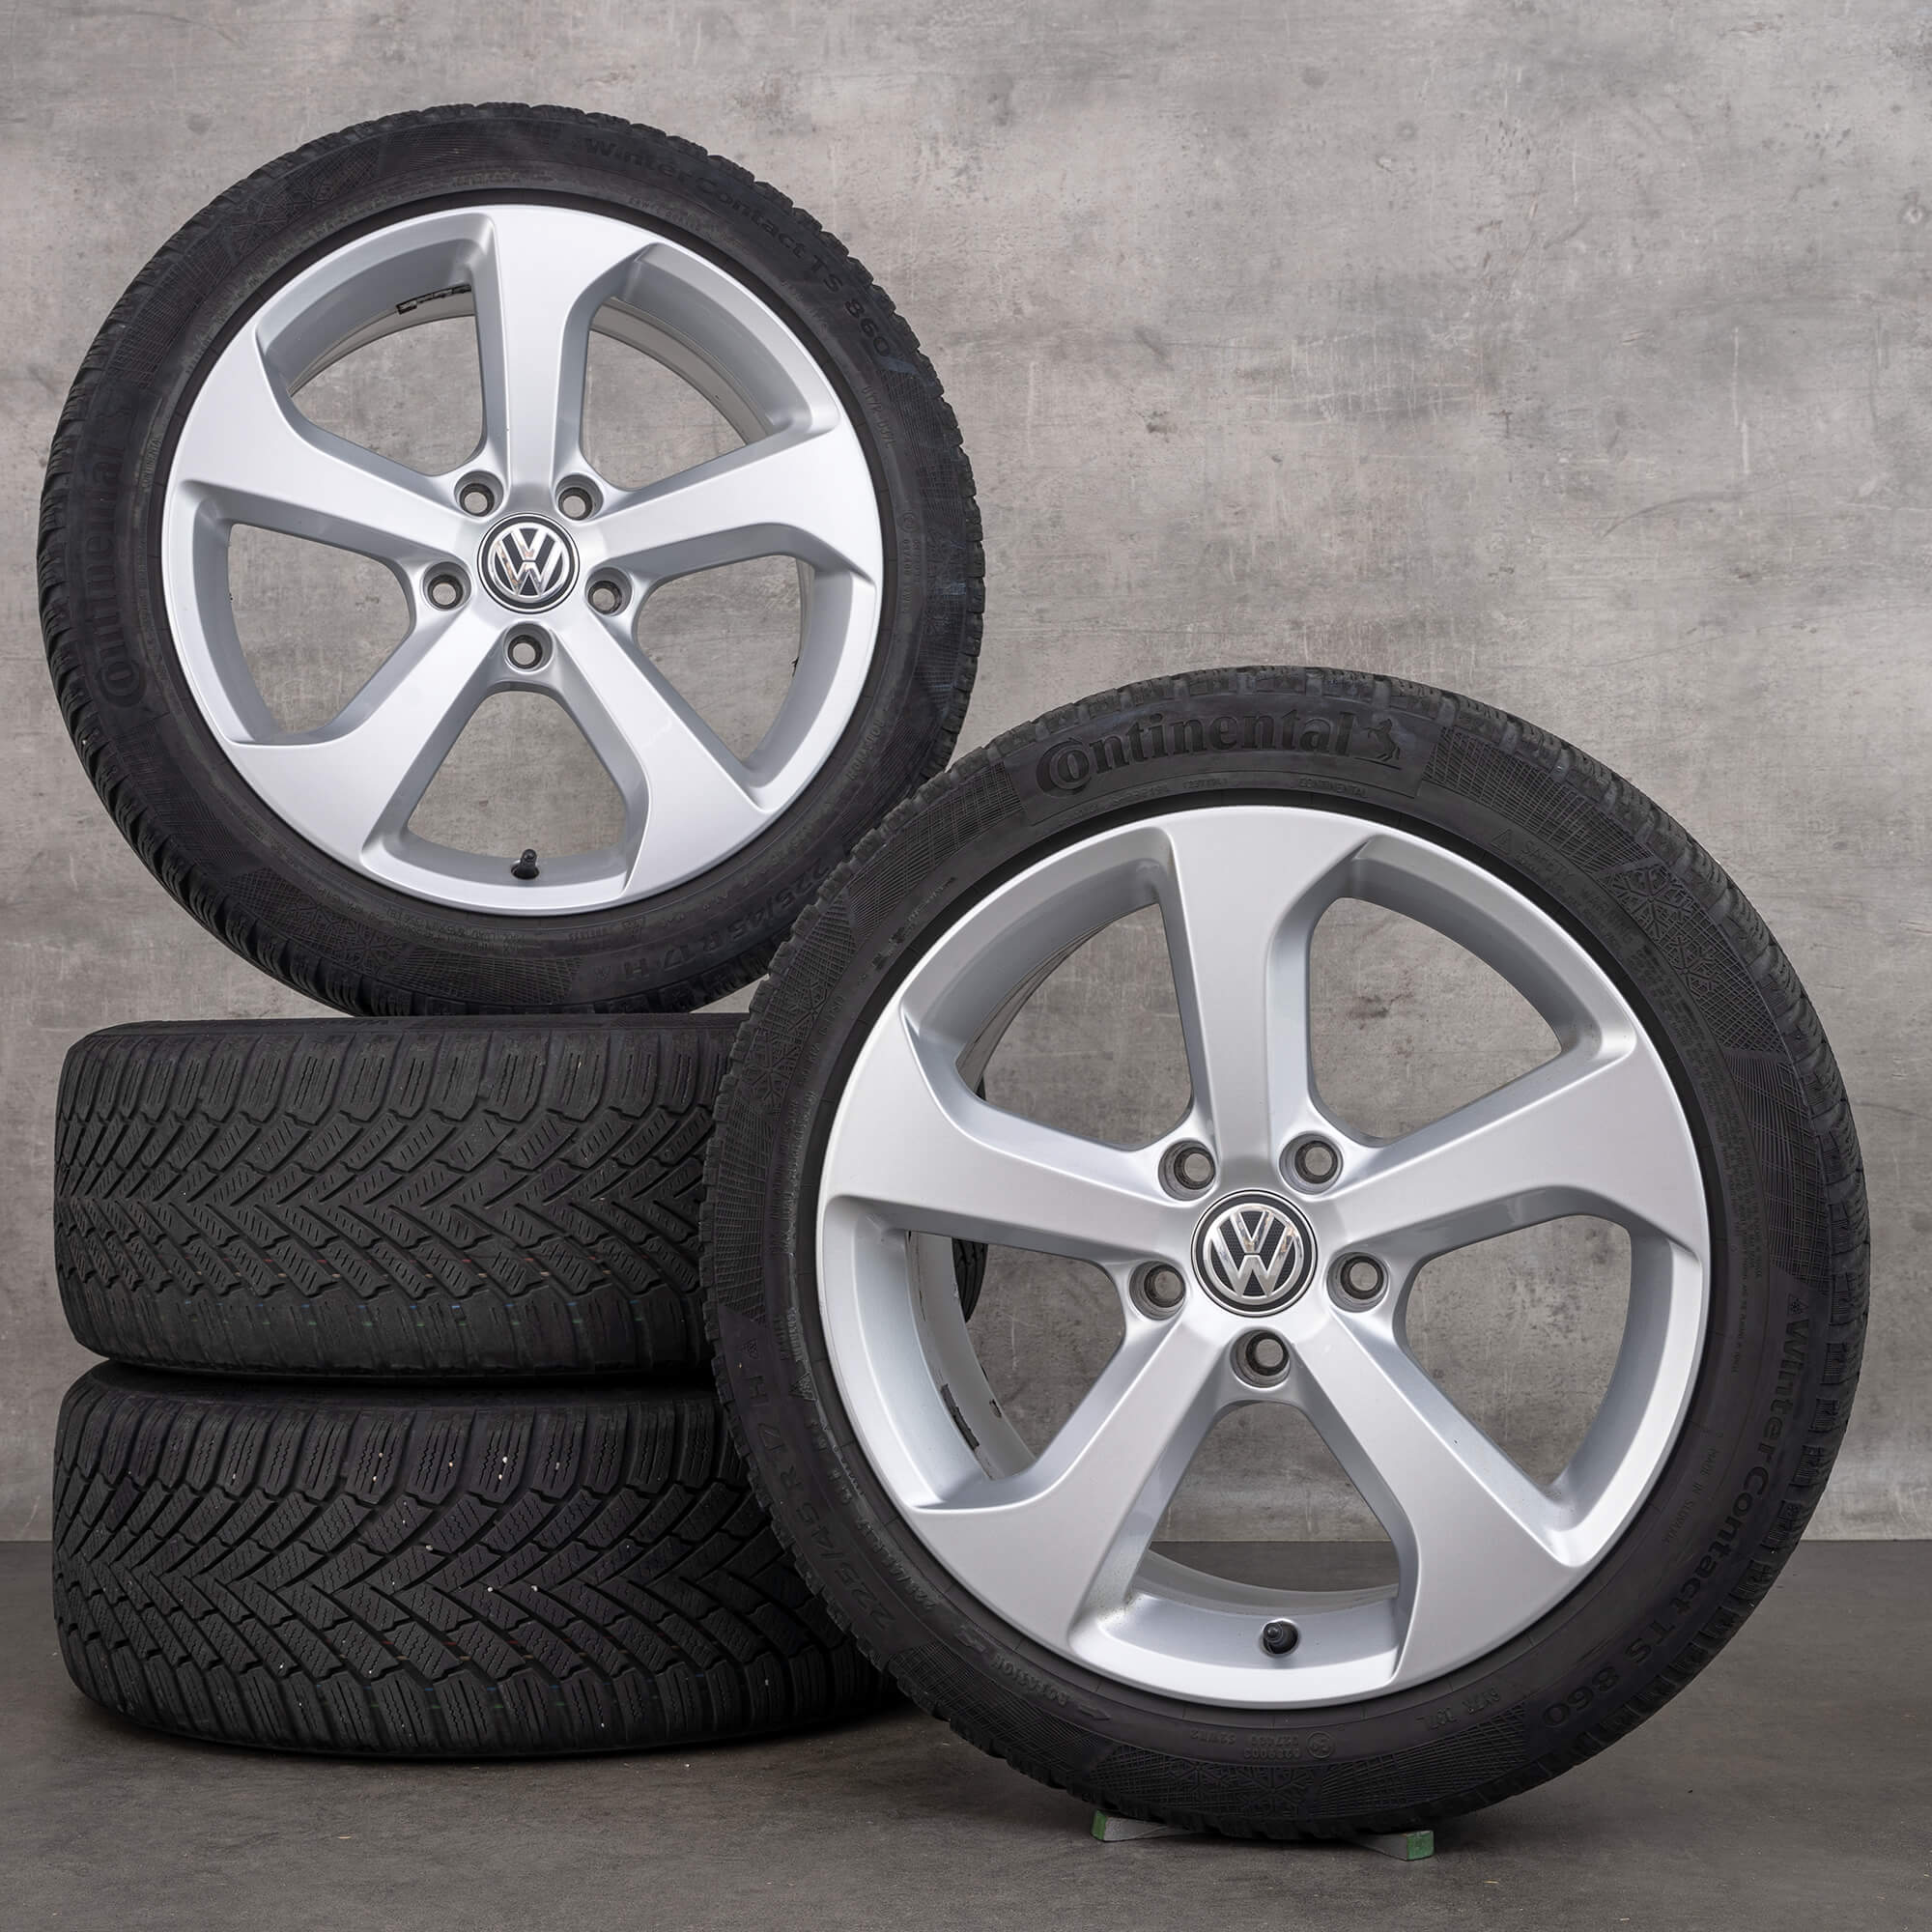 VW 17 inch rims Golf 7 VII Brooklyn winter tires wheels 5G0601025BG